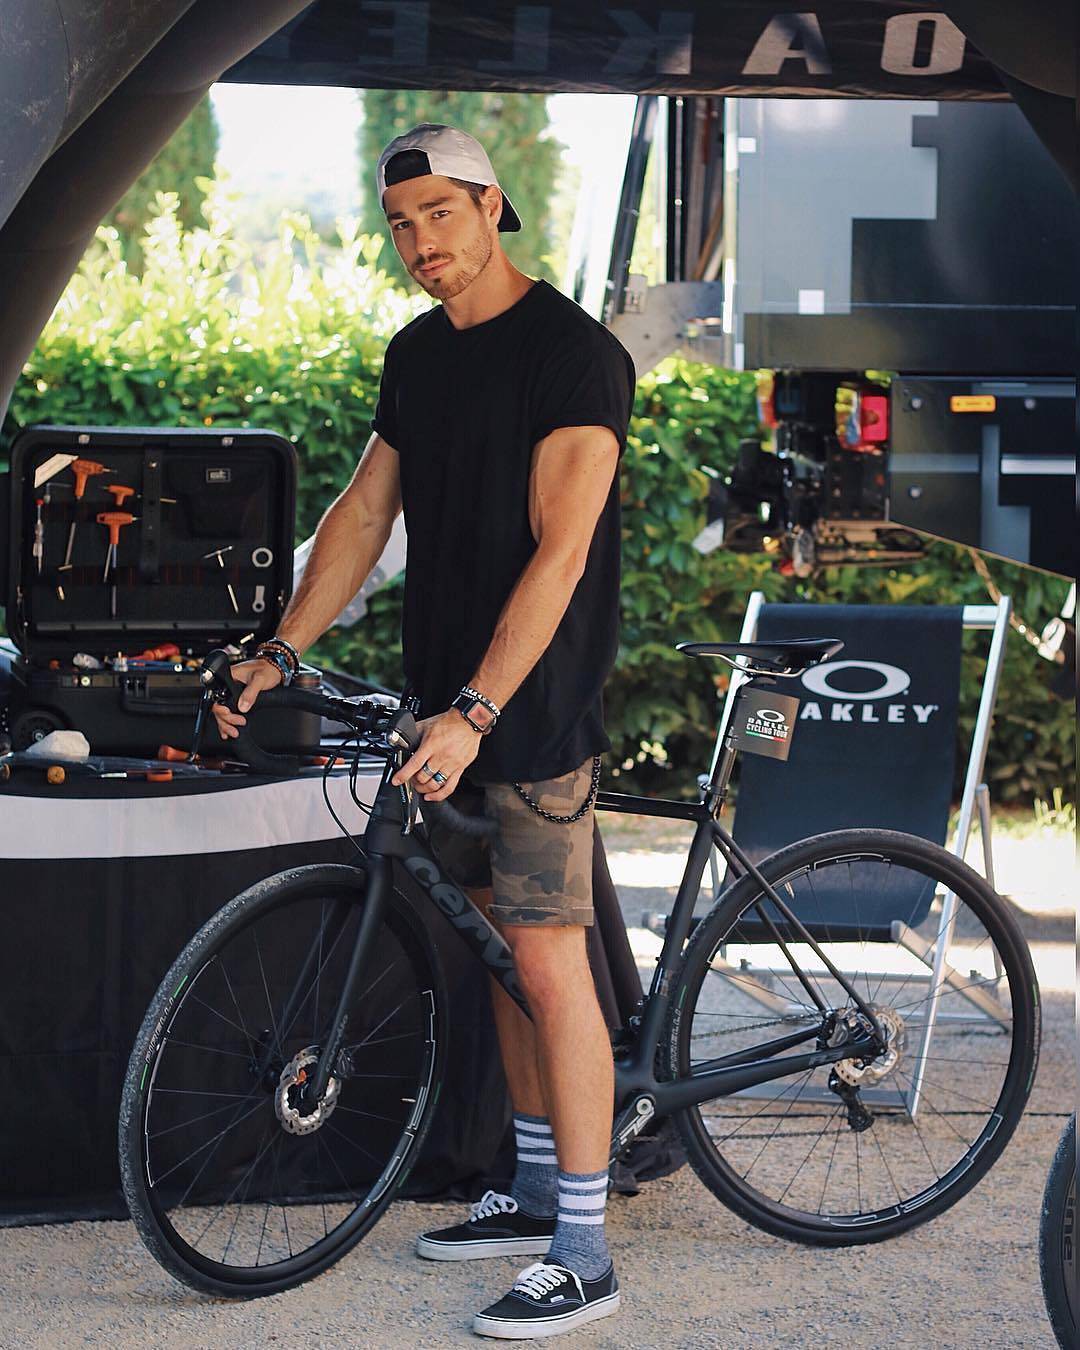 Grazie @oakleybike per aver scelto Villa Barberino 🚴🏽‍♂️️ Luca Vezil è uno dei volti di questa tappa @OakleyCyclingTour 🚴🏻‍♀️ Repost di @lucavezil ️ —————————-
•
•